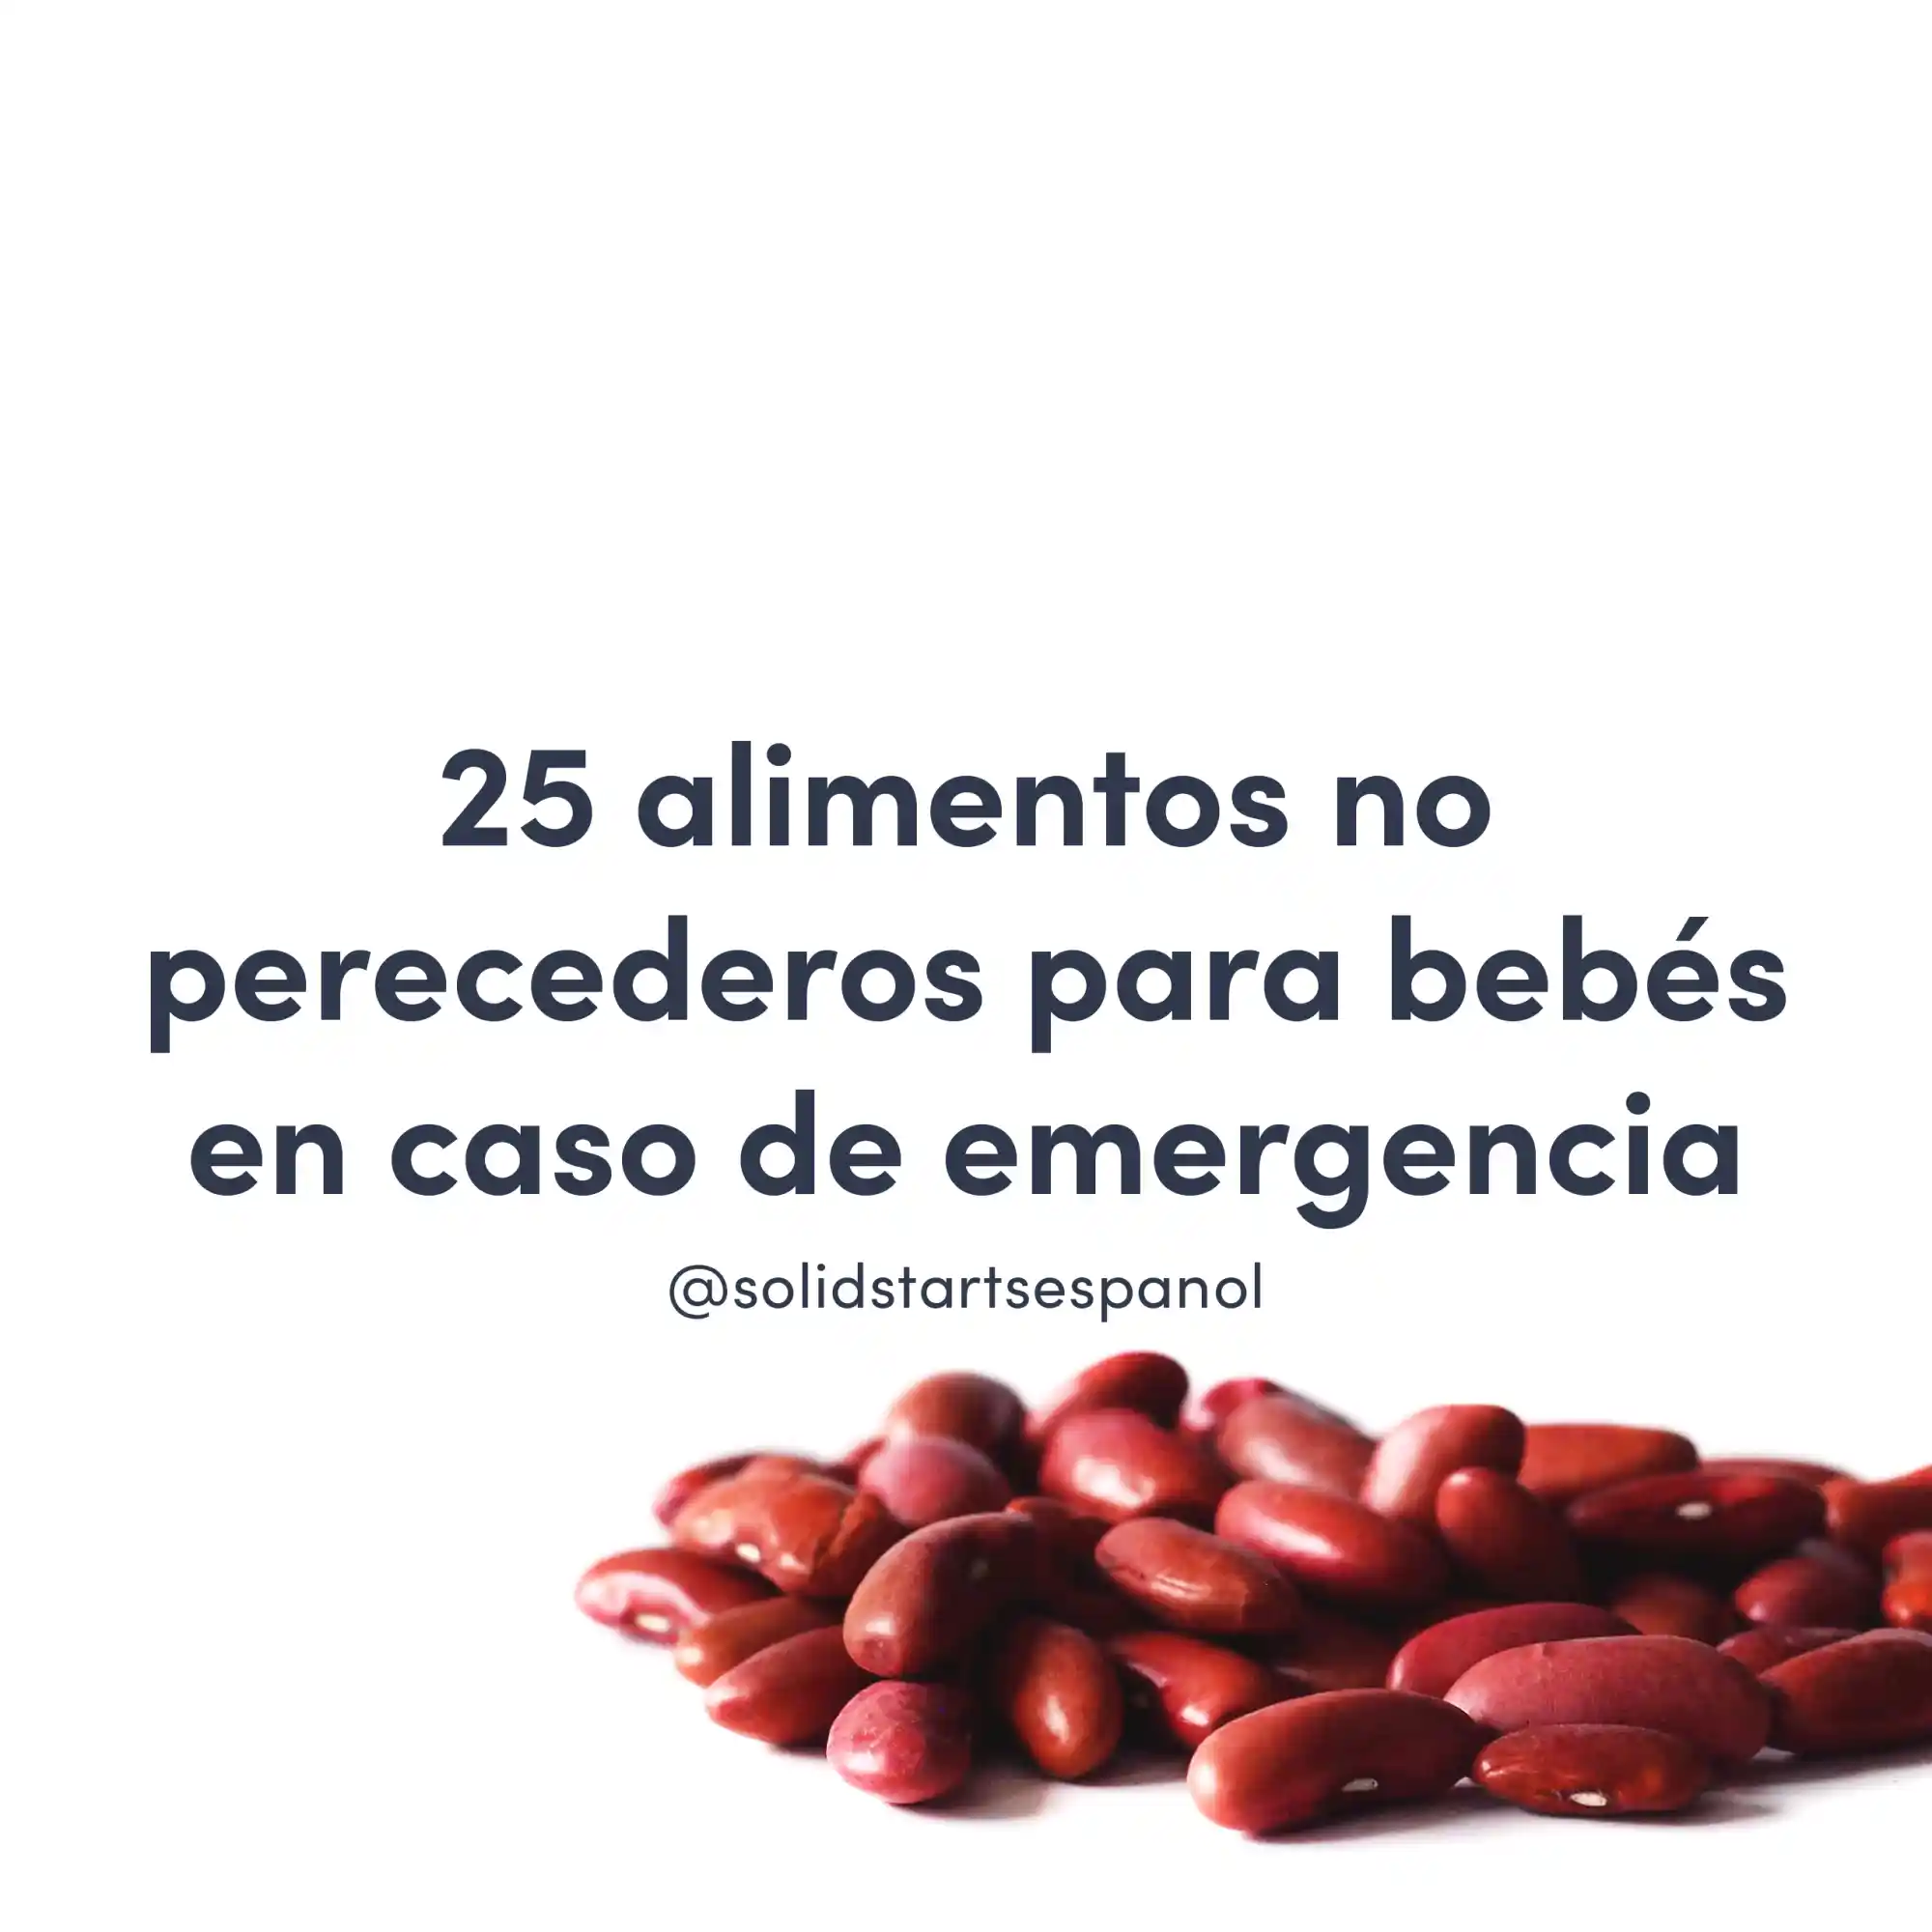 Imagen de frijoles rojos con el título "25 alimentos no perecederos para bebés en caso de emergencia"